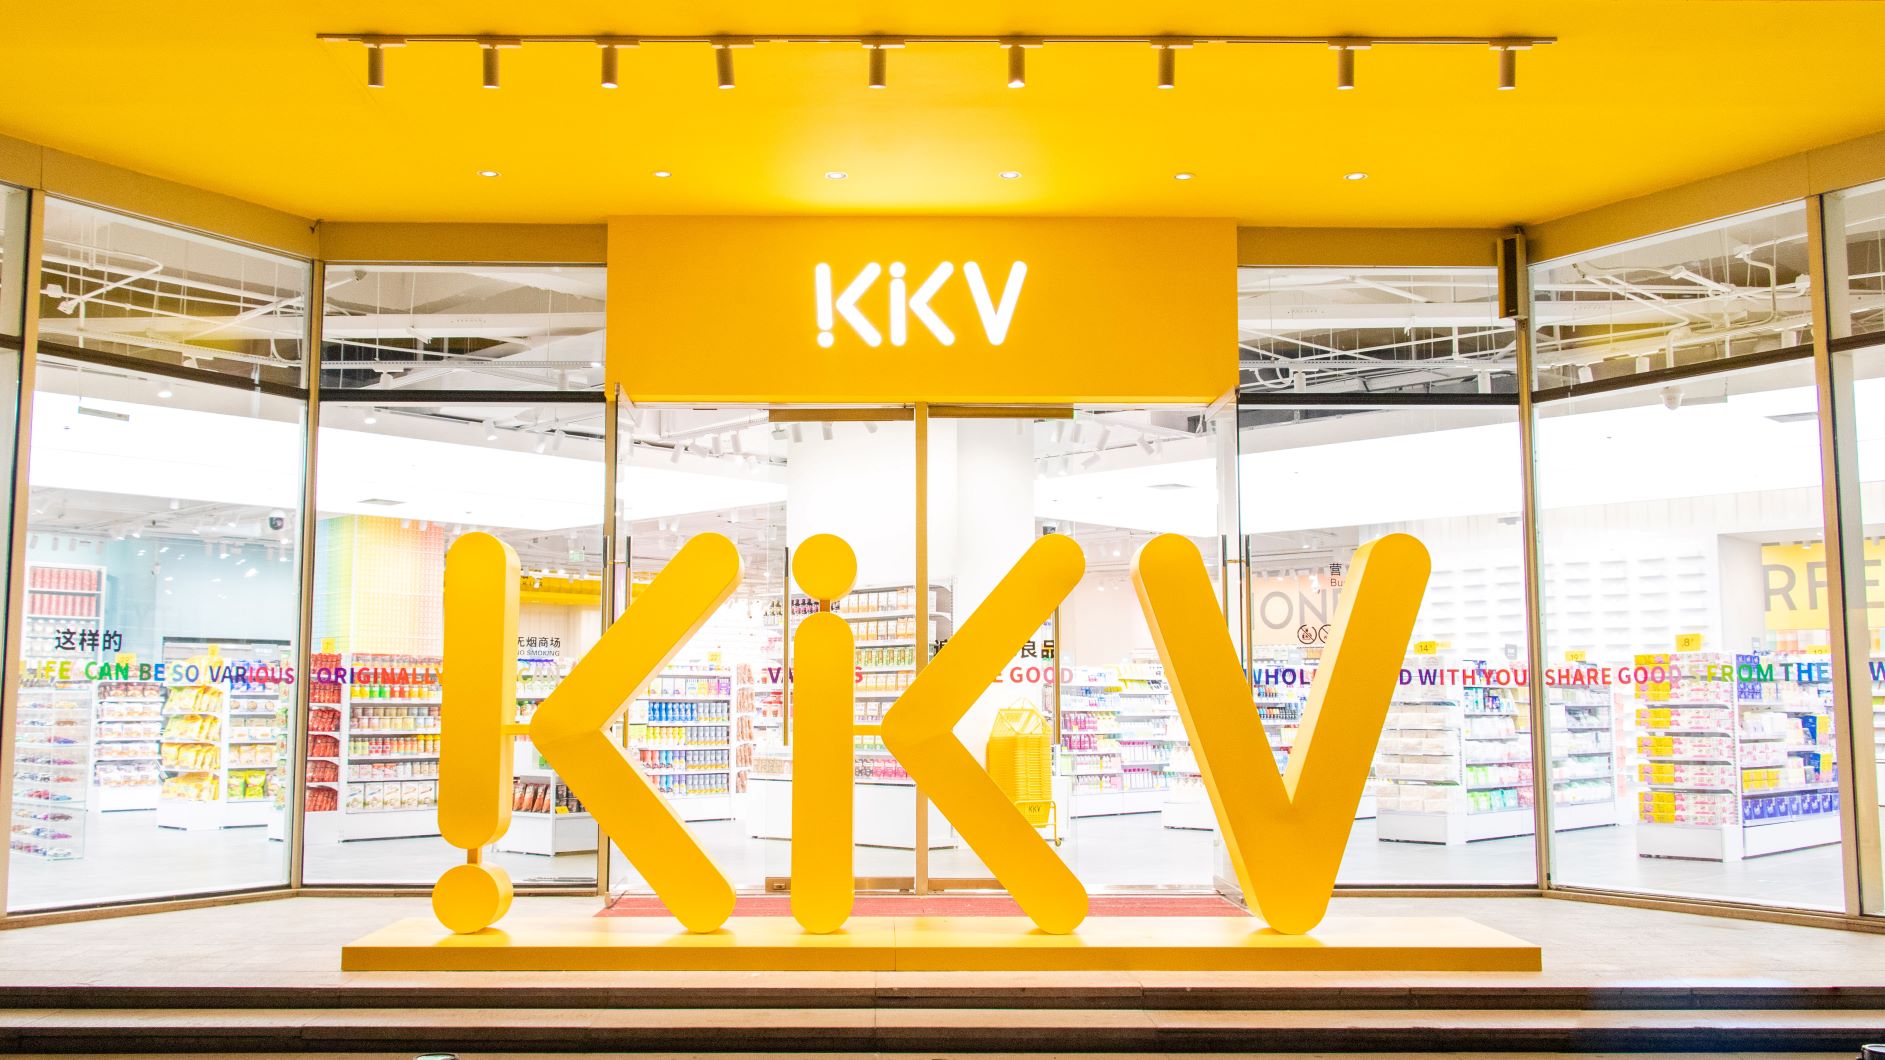 Chuỗi cửa hàng KKV lần đầu tiên xuất hiện tại Việt Nam, dự kiến khai trương vào 25/7 tại Vincom Plaza Ba Tháng Hai (ảnh minh họa)